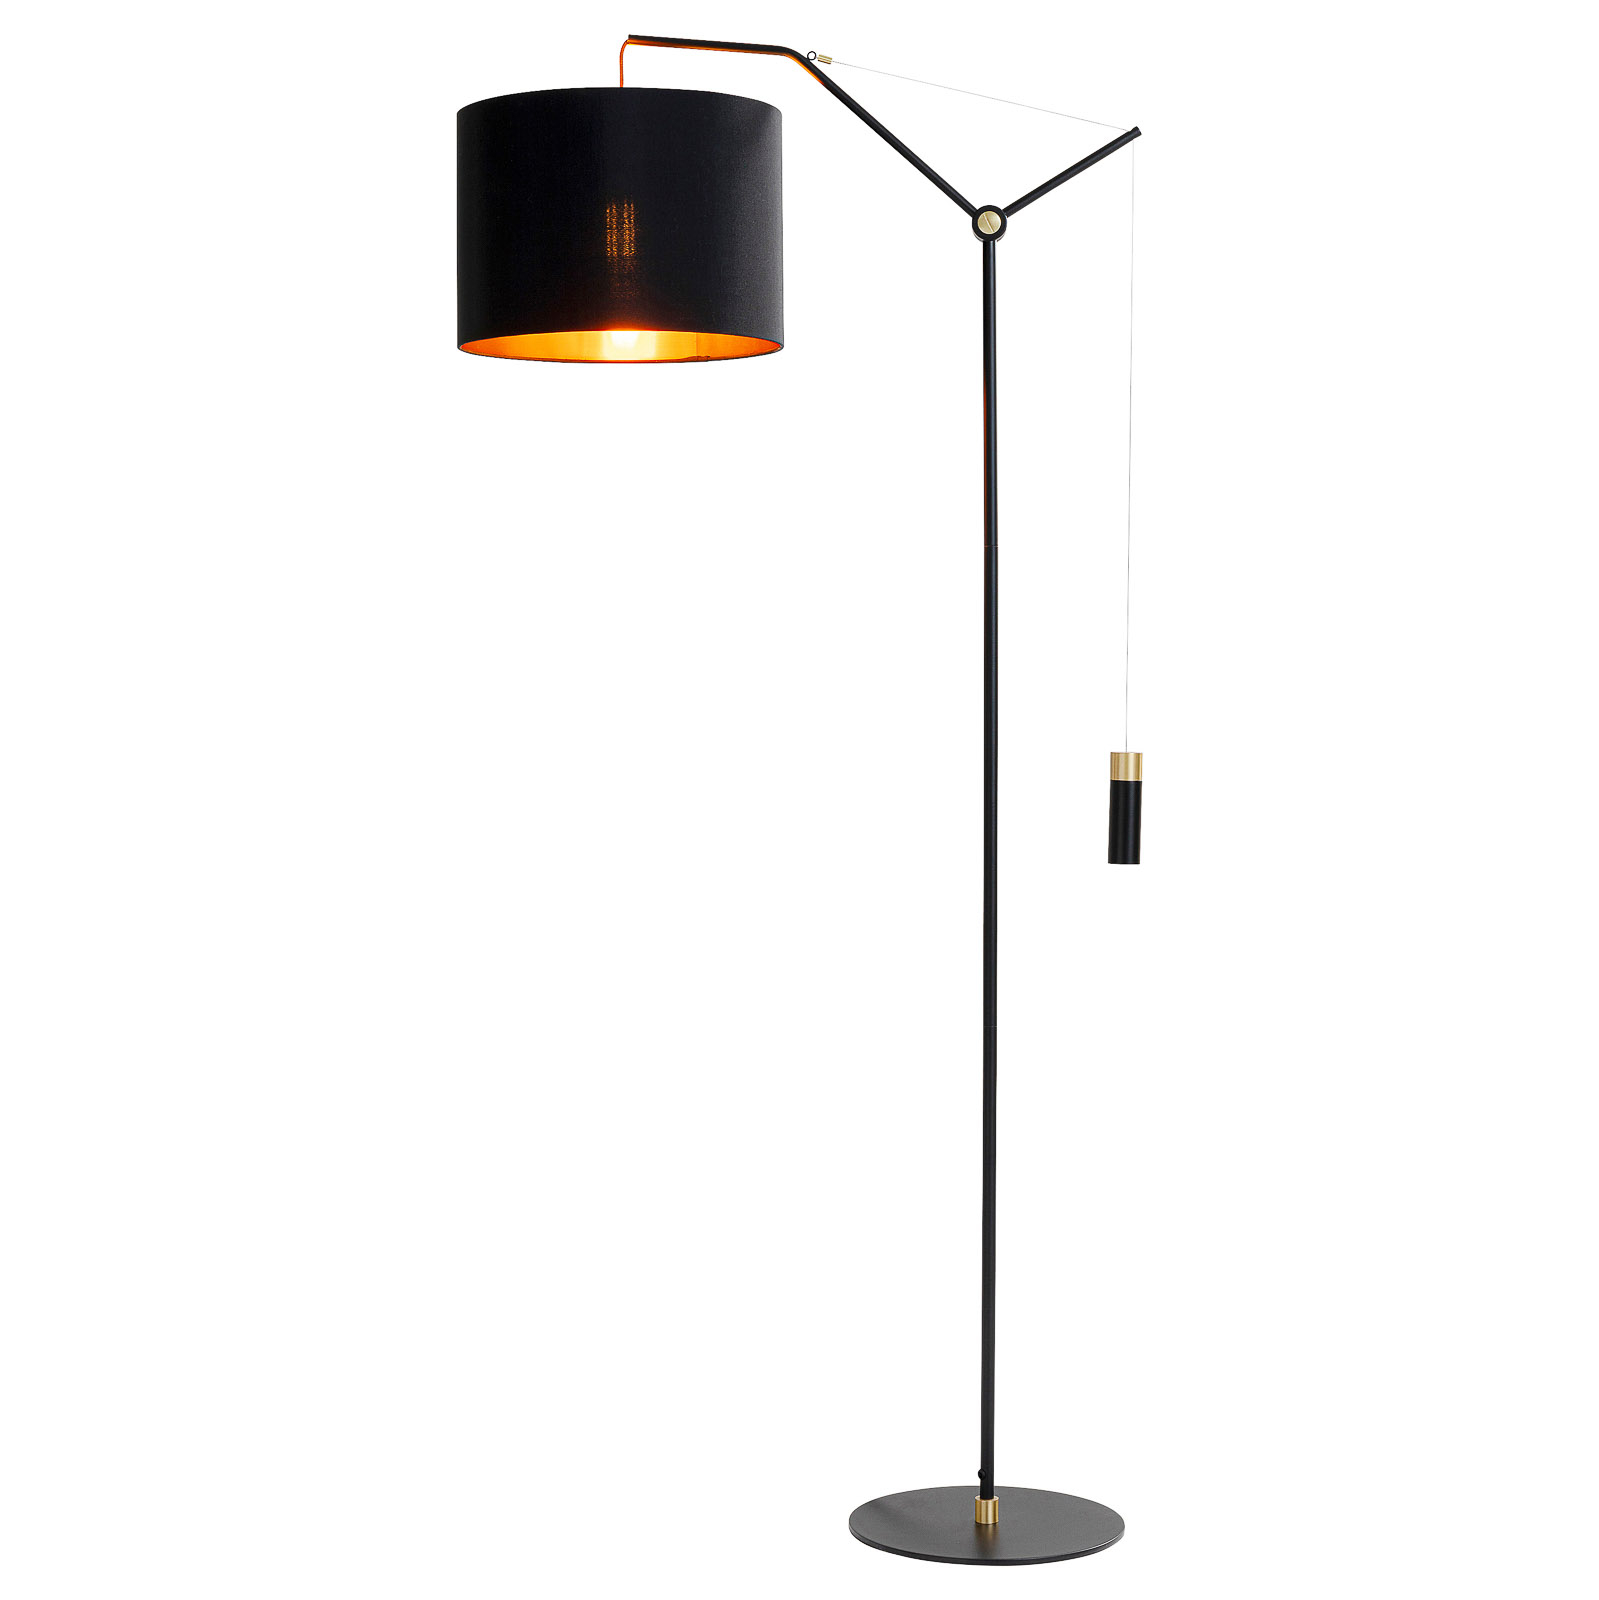 KAREN Salotto floor lamp, height-adjustable